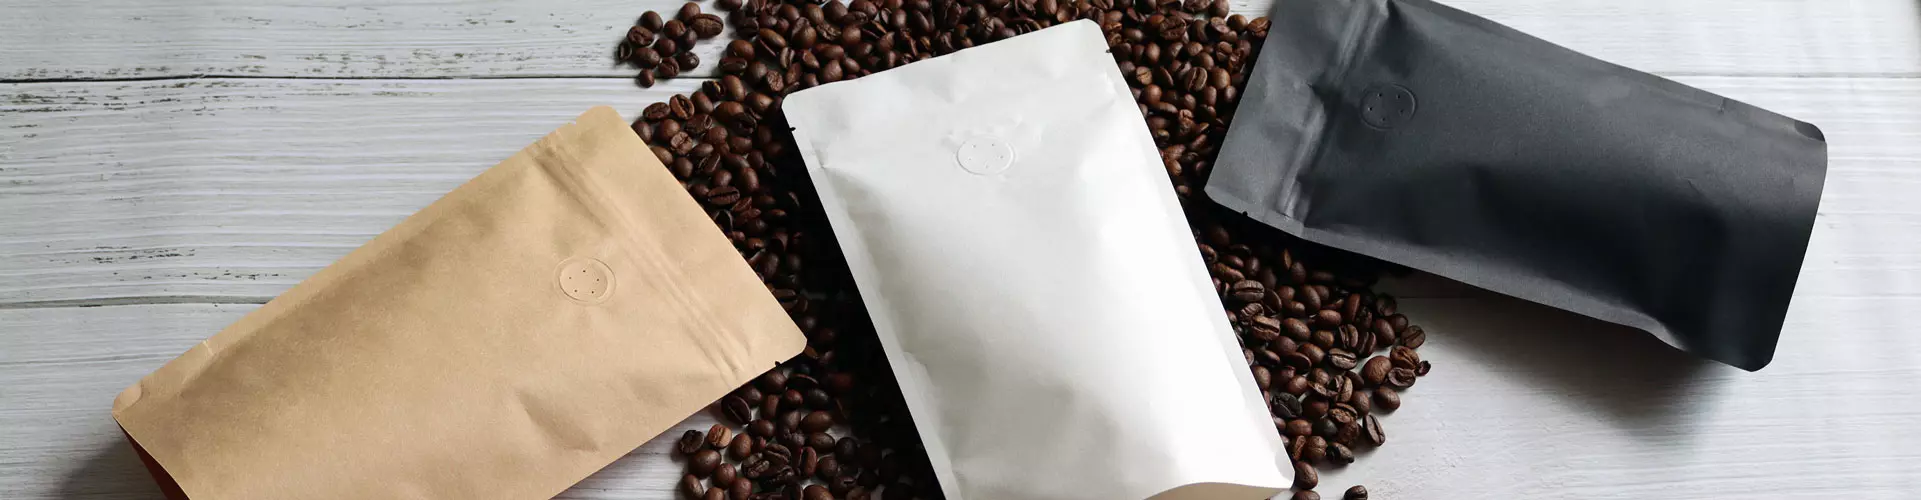 Standbodenbeutel mit Aromaventil_Kaffeeverpackungen